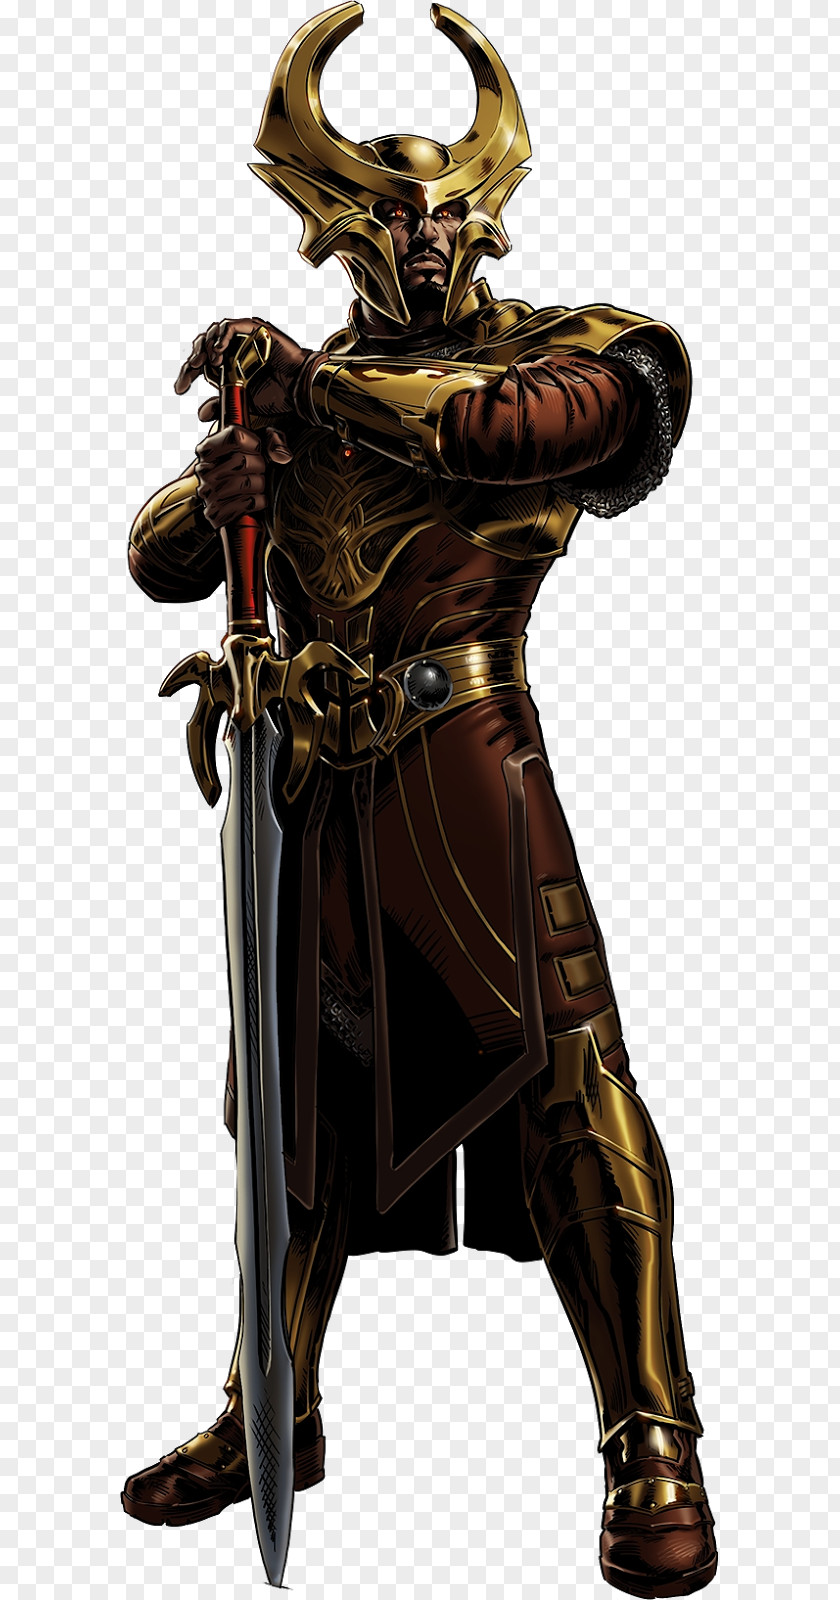 Avenger Heimdall Marvel: Avengers Alliance Thor Odin Loki PNG